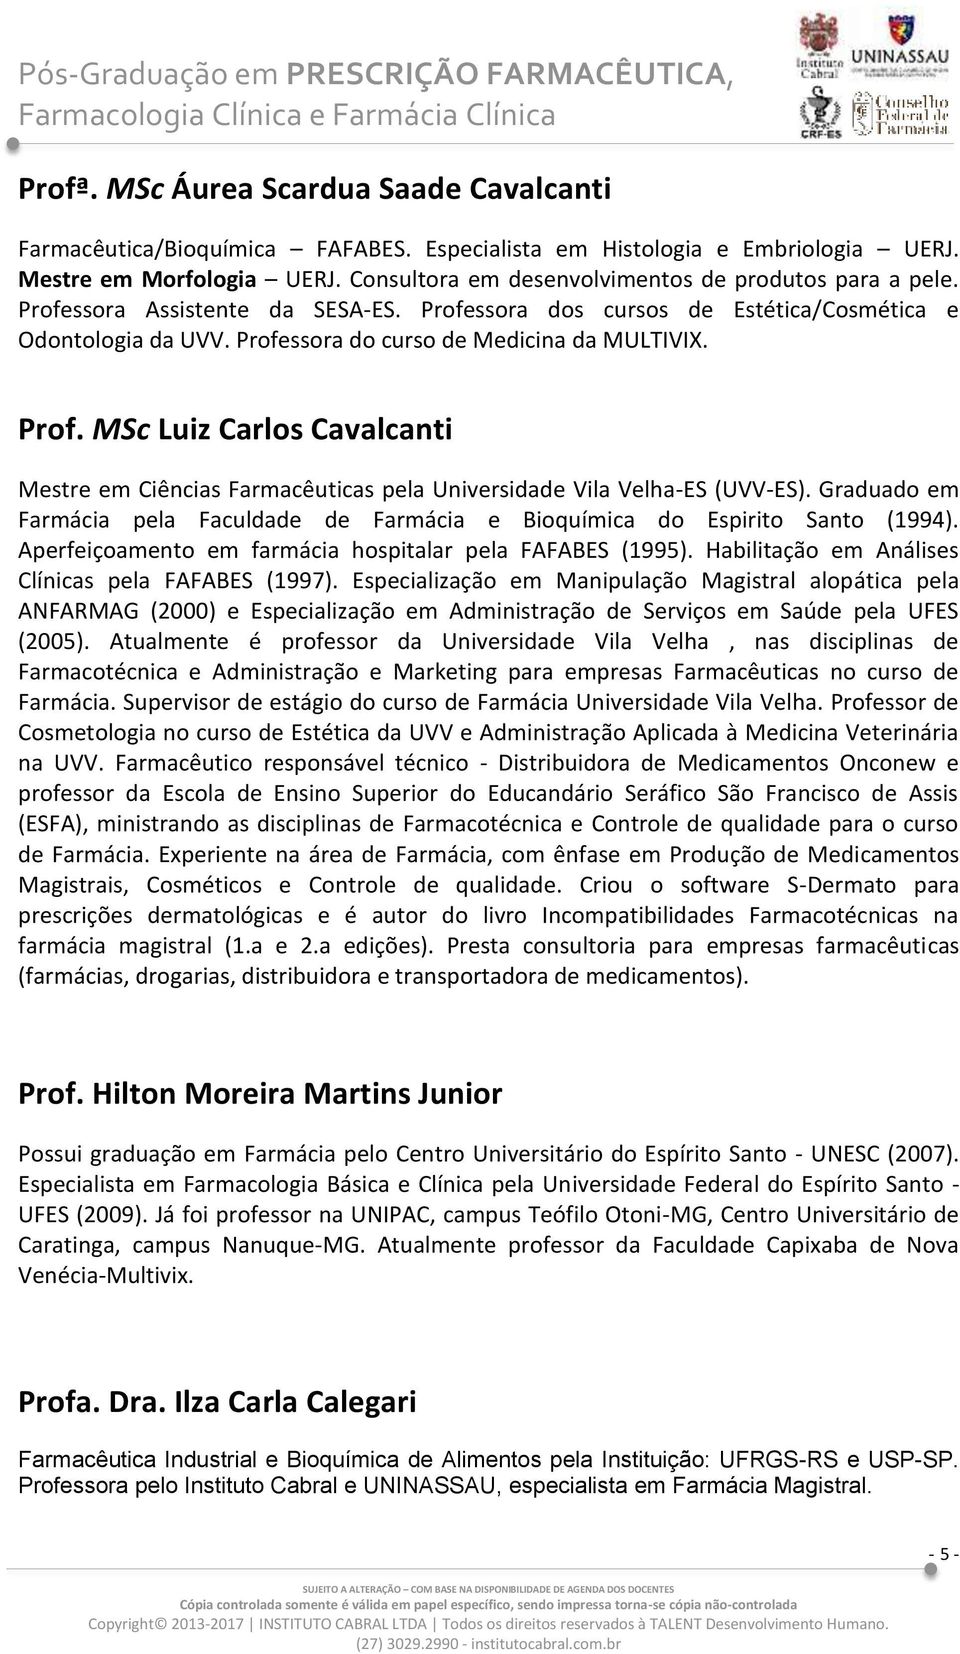 Prof. MSc Luiz Carlos Cavalcanti Mestre em Ciências Farmacêuticas pela Universidade Vila Velha-ES (UVV-ES). Graduado em Farmácia pela Faculdade de Farmácia e Bioquímica do Espirito Santo (1994).